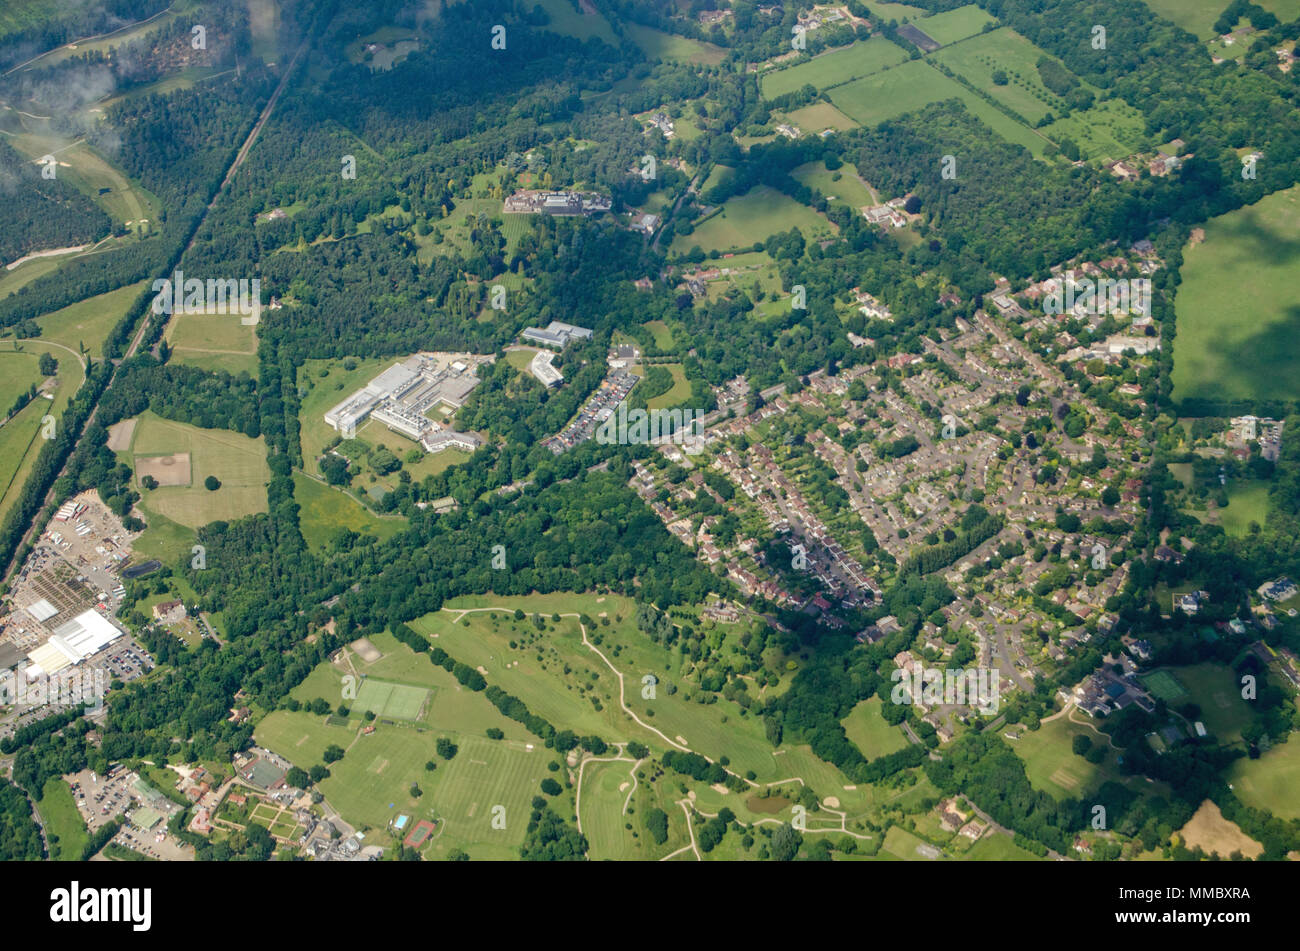 Vista aerea di parte del Surrey villaggio di Windlesham. Insieme con la scatola e un campo da golf, le attività di ricerca e sviluppo del sito dell'pharmaceut Foto Stock